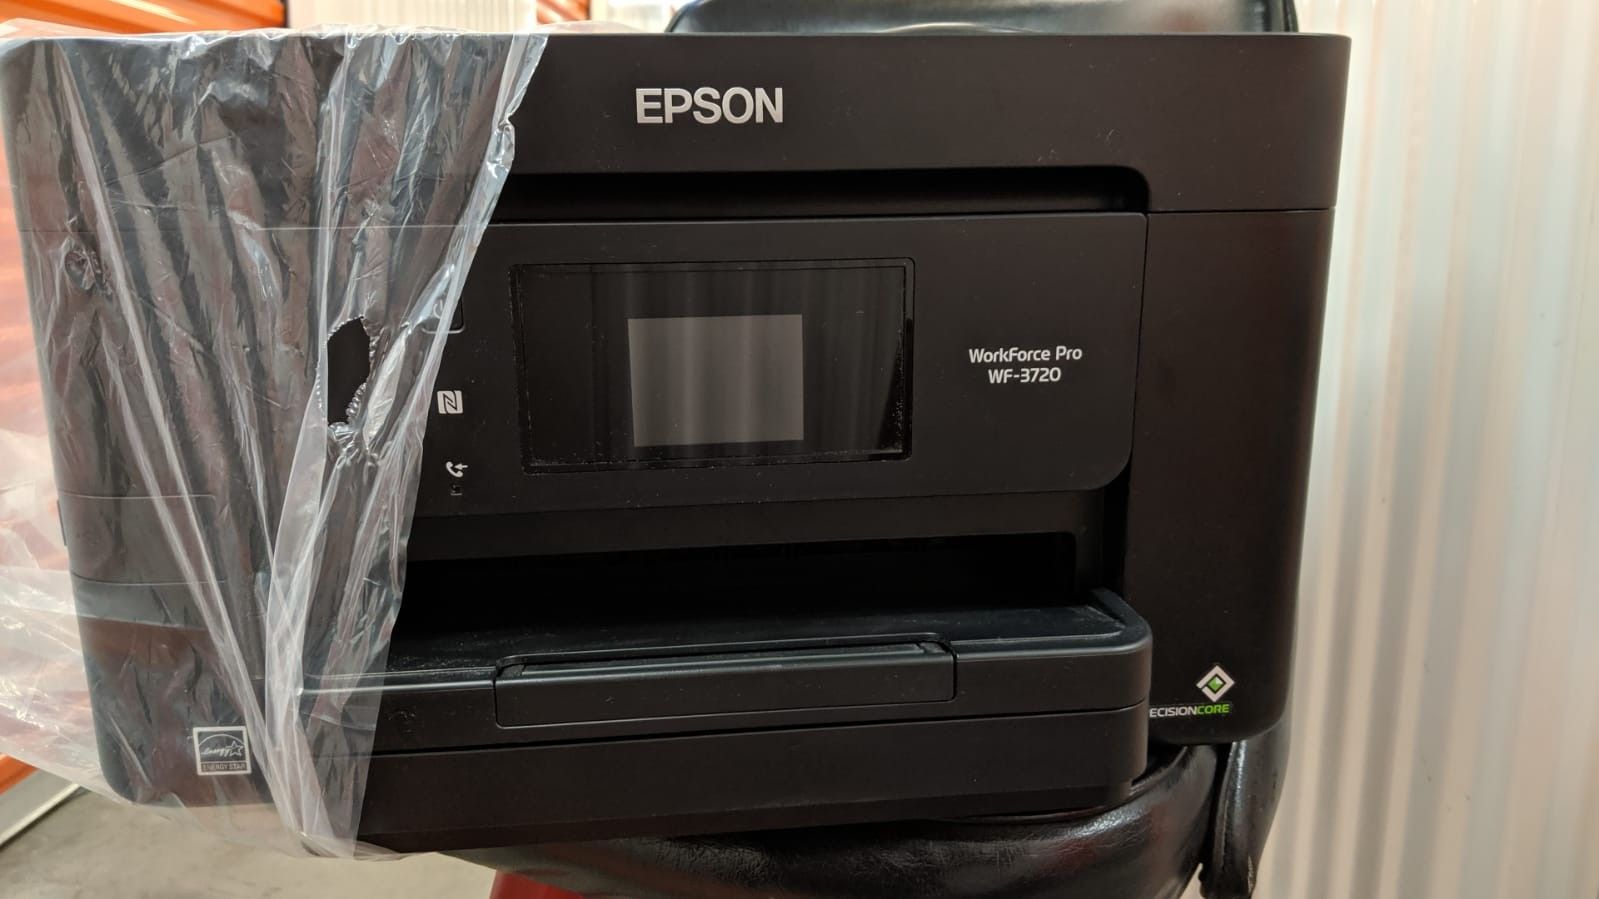 Epson WorkForce Pro WF-3720 Printer/Copier/Scanner